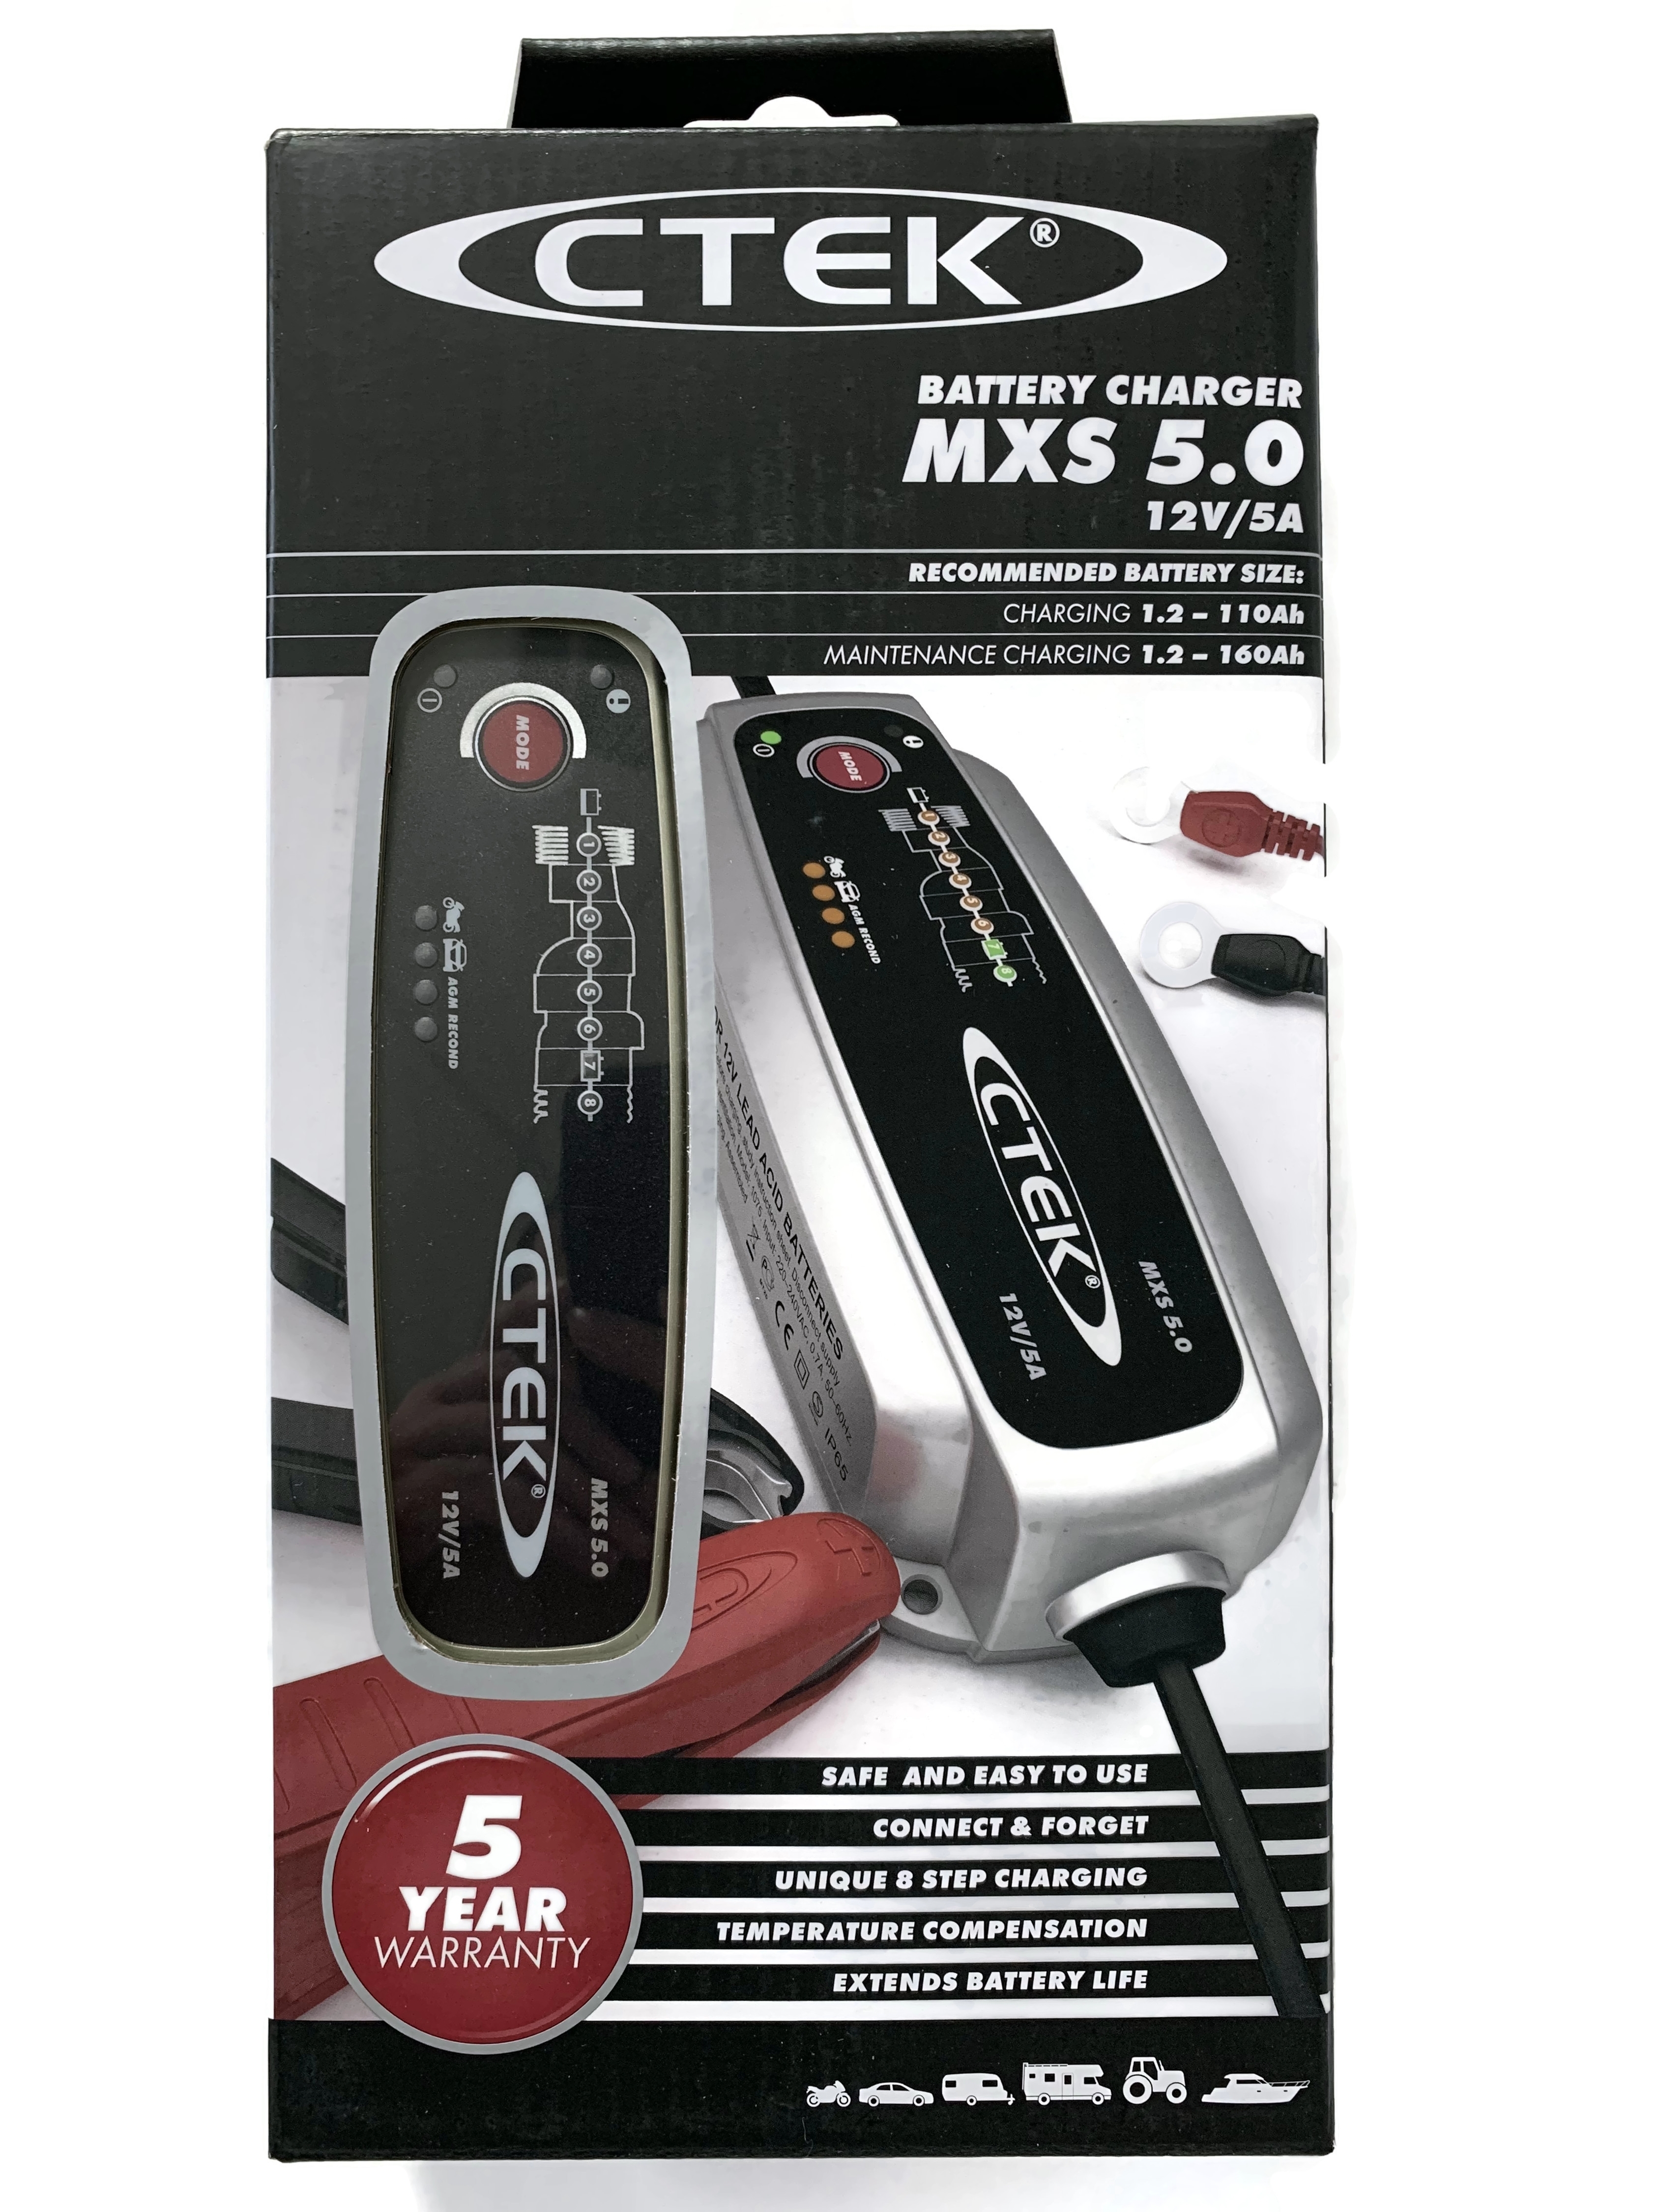 CTEK Batterie Ladegerät MXS 5.0 12V/5A